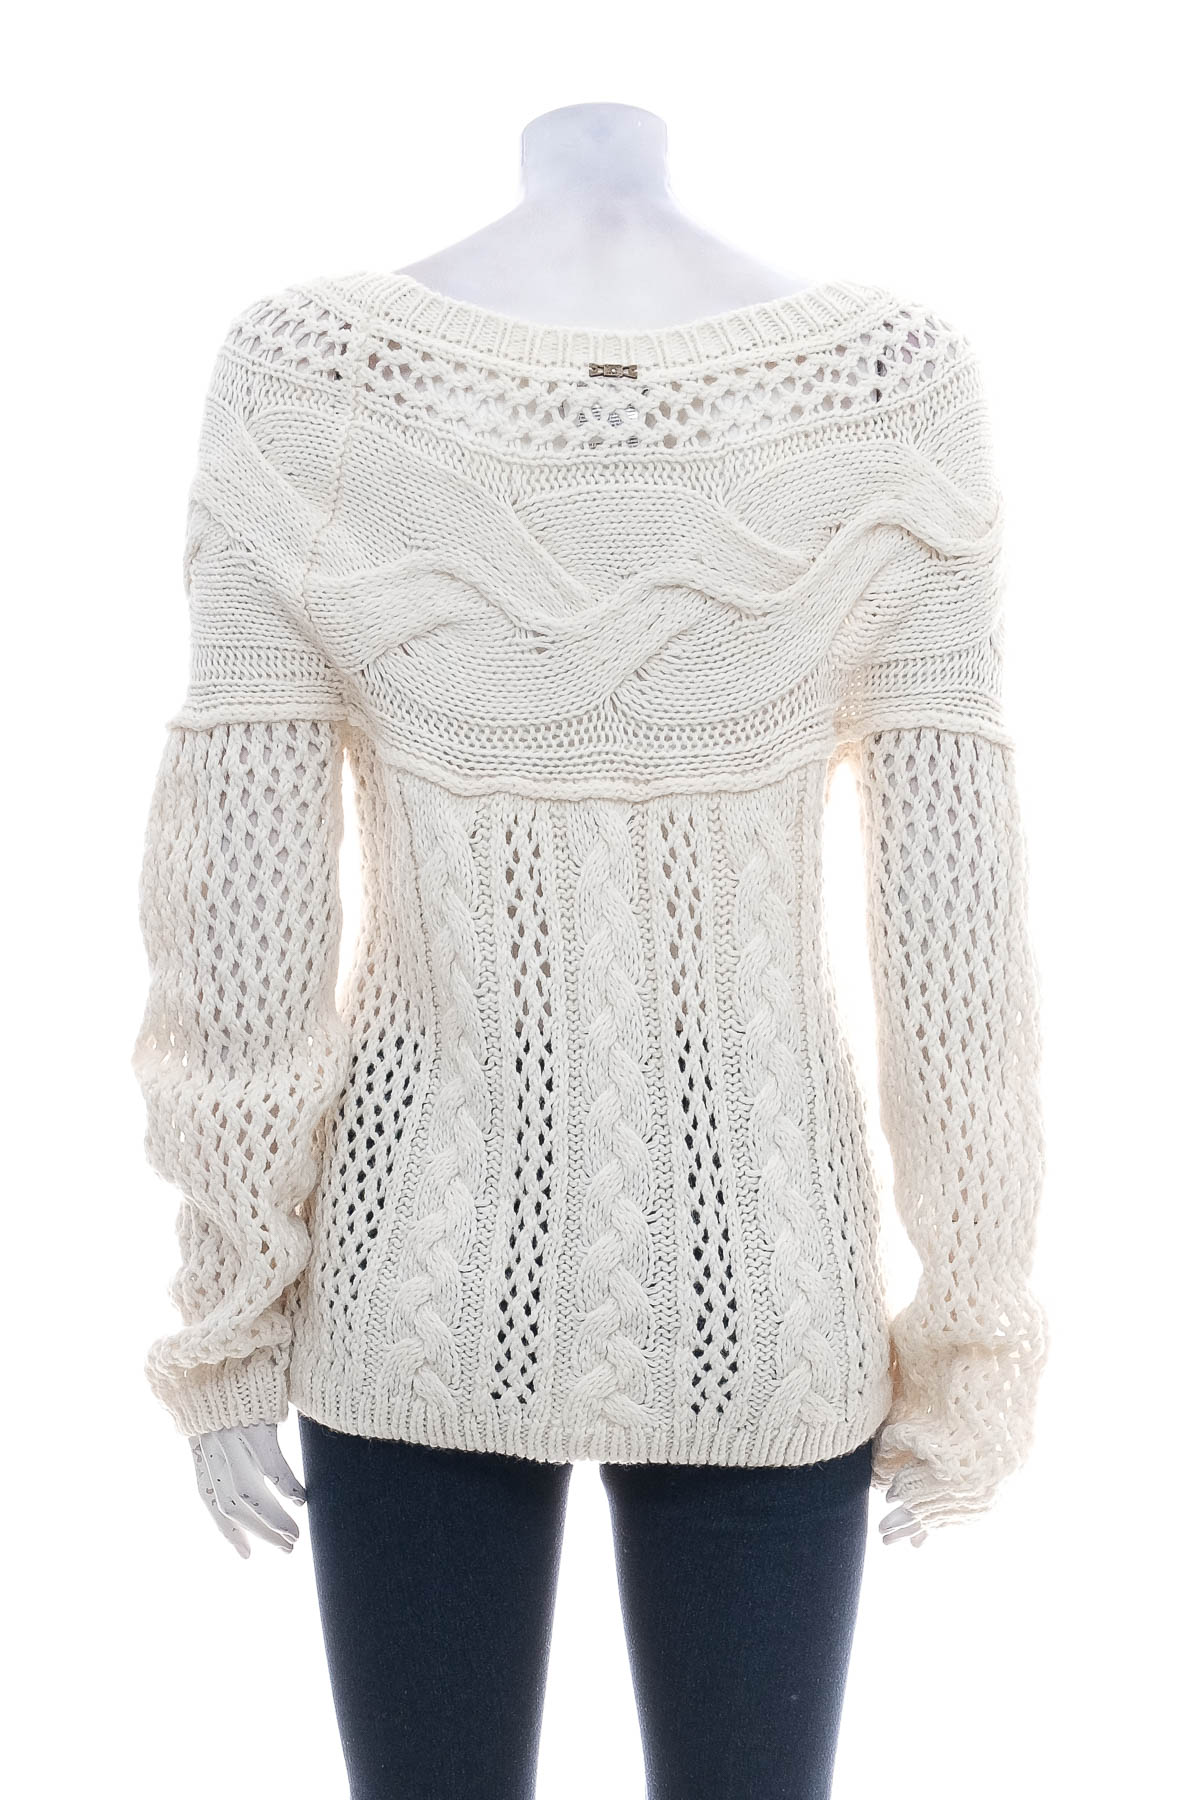 Women's sweater - Liu.Jo - 1